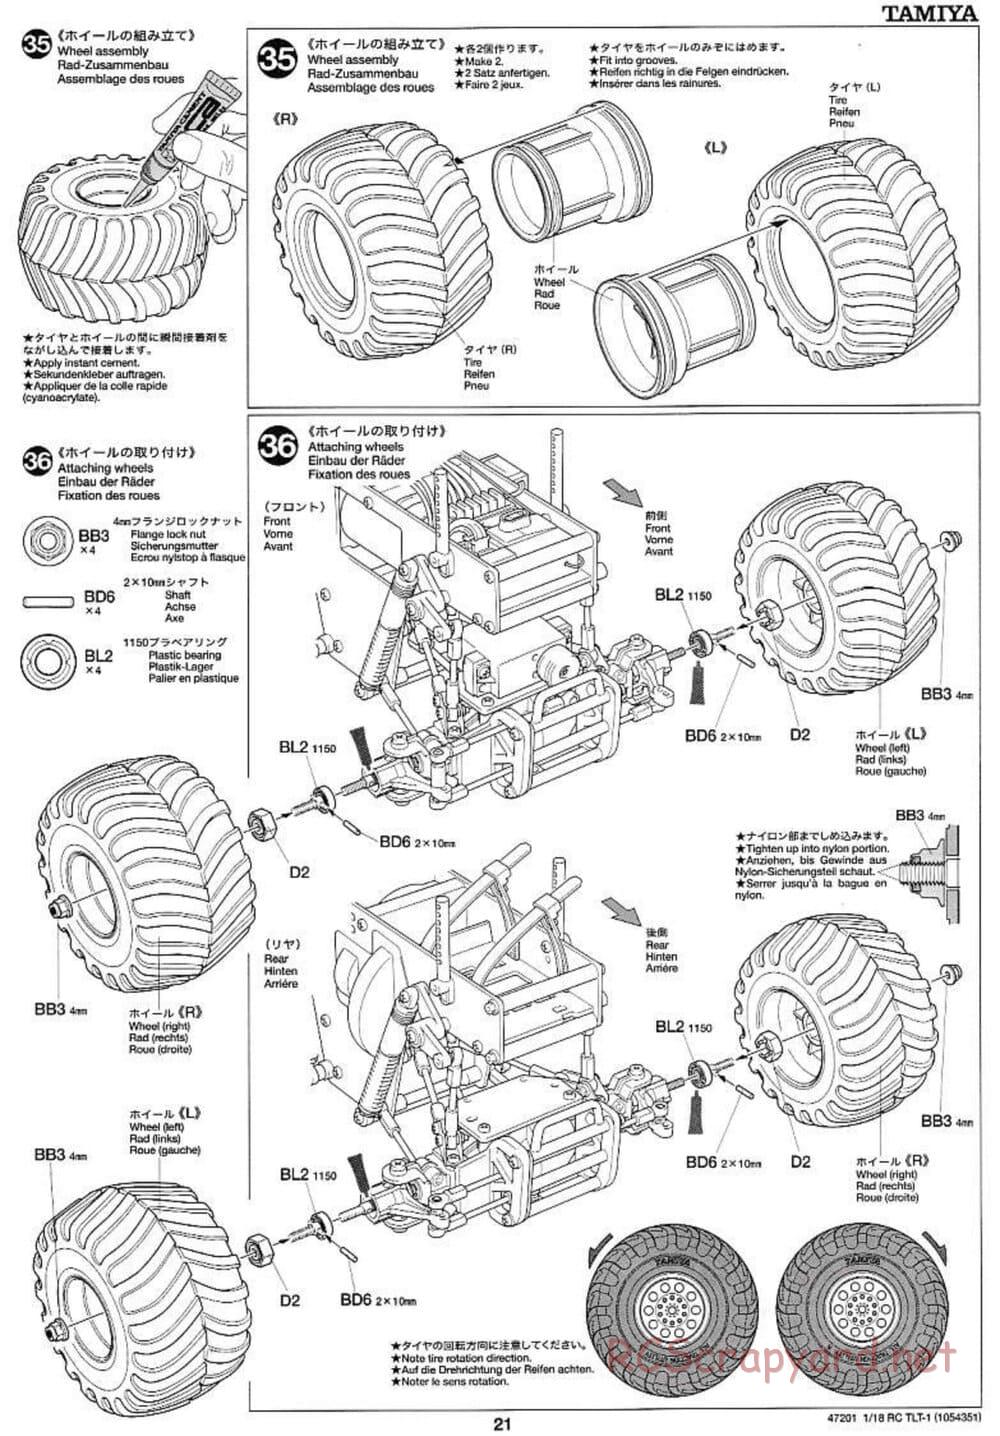 Tamiya - Rock Buster - TLT-1 Chassis - Manual - Page 21